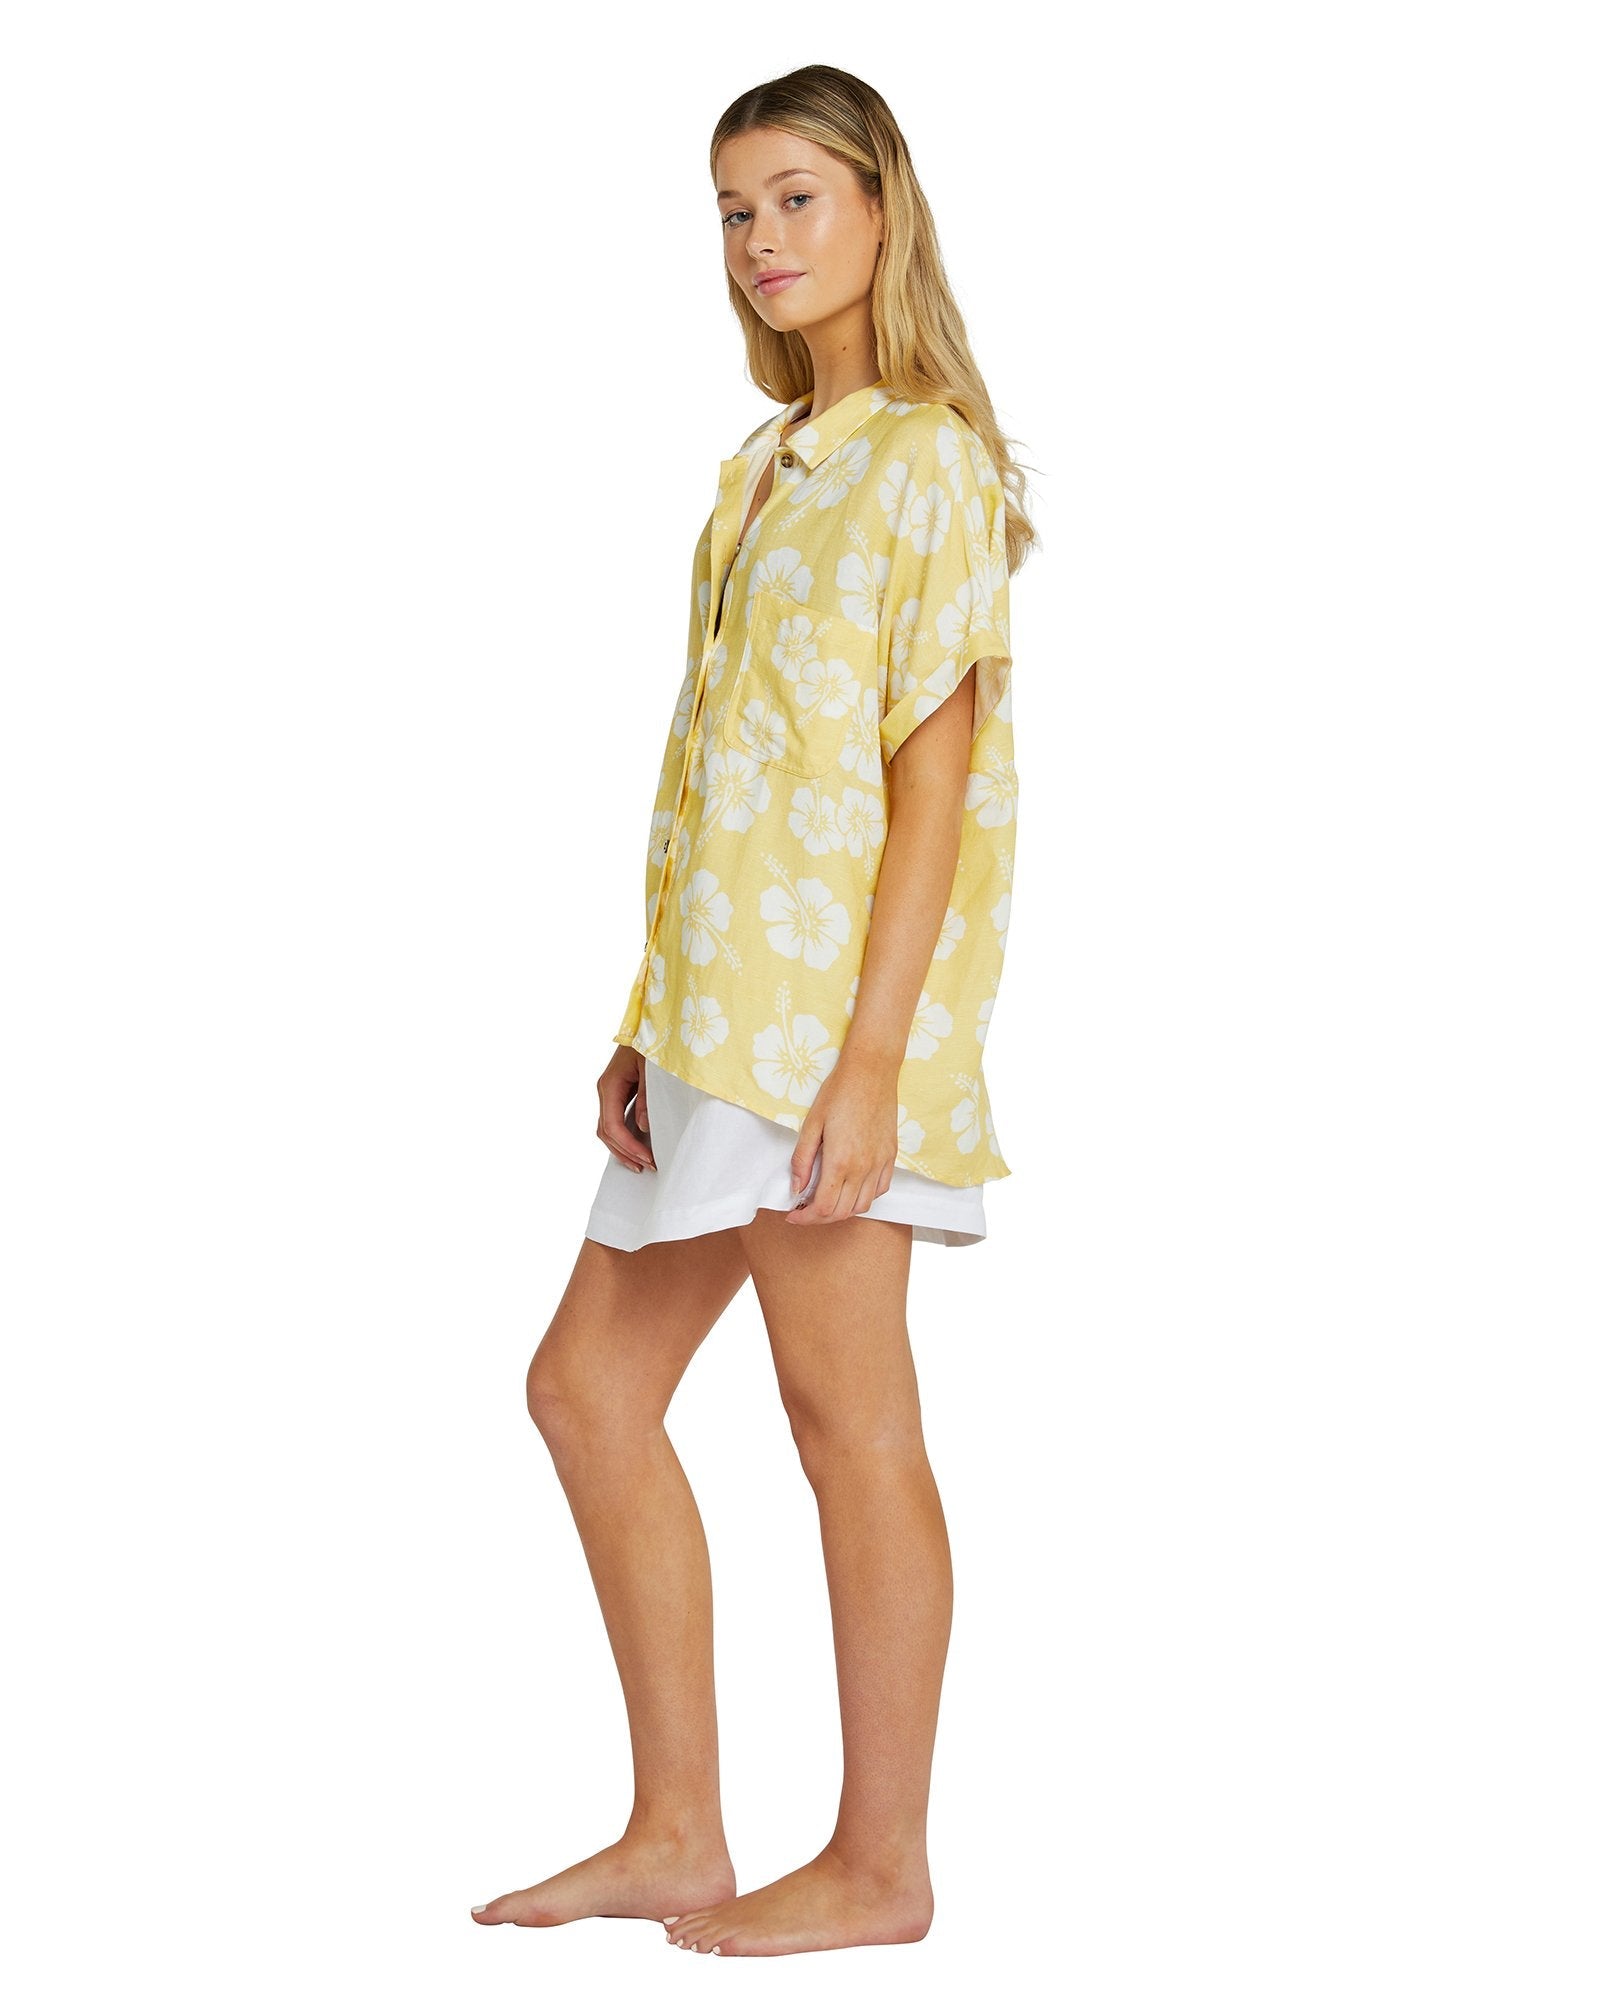 Womens - Short Sleeve Shirt - Hibiscus Popcorn